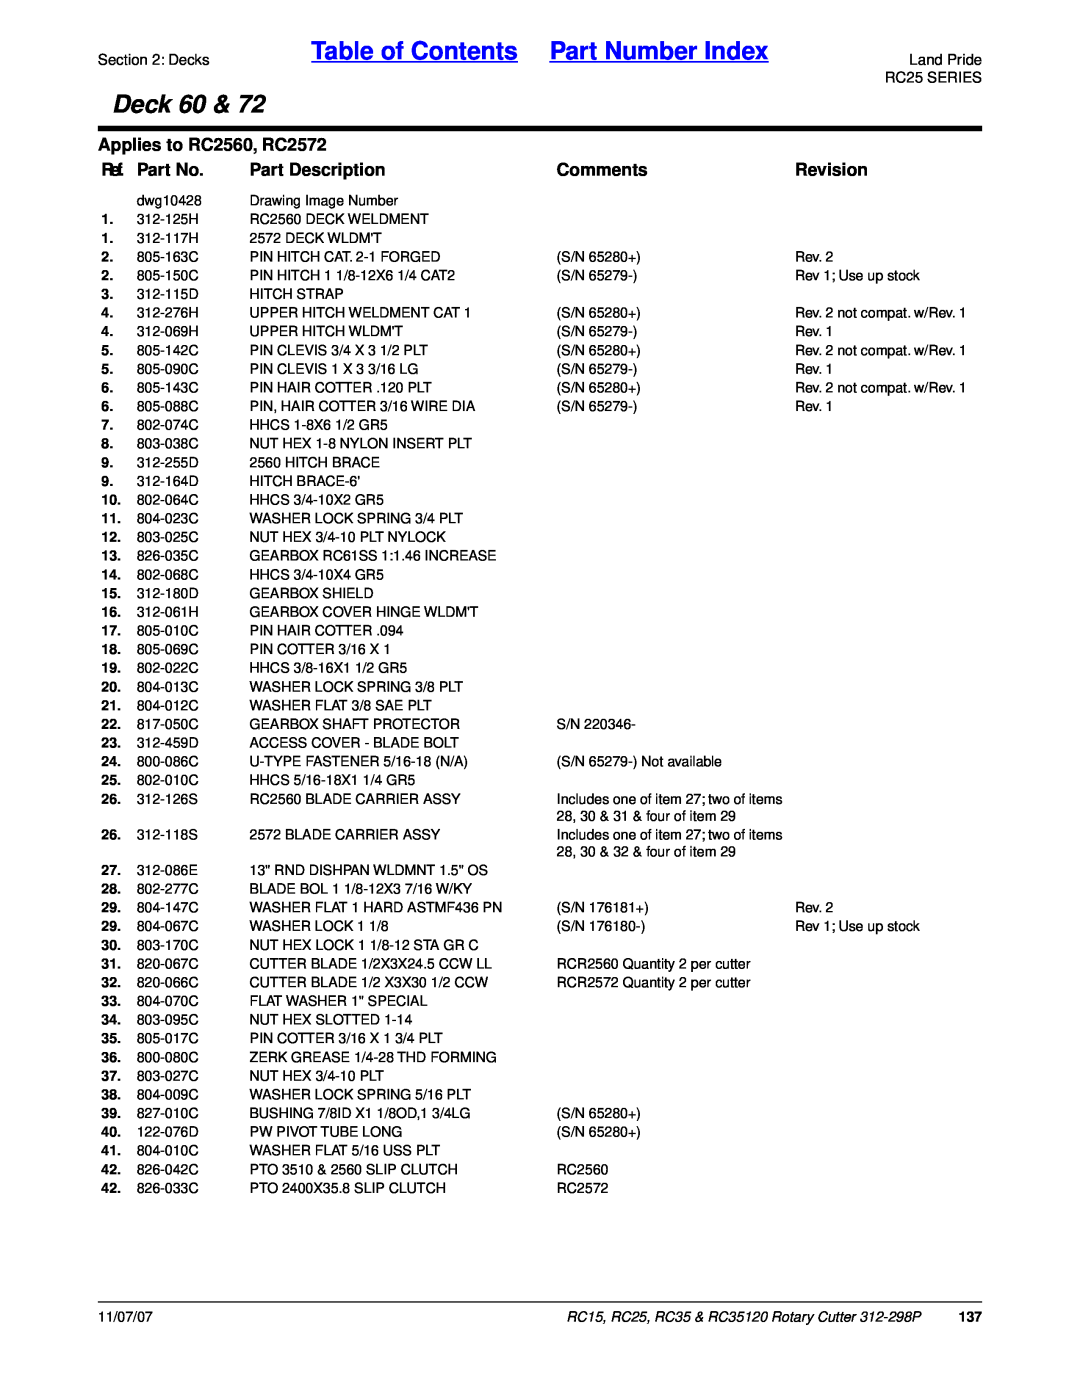 Land Pride RC35 Table of Contents Part Number Index, Deck 60, Applies to RC2560, RC2572, Ref. Part No, Part Description 